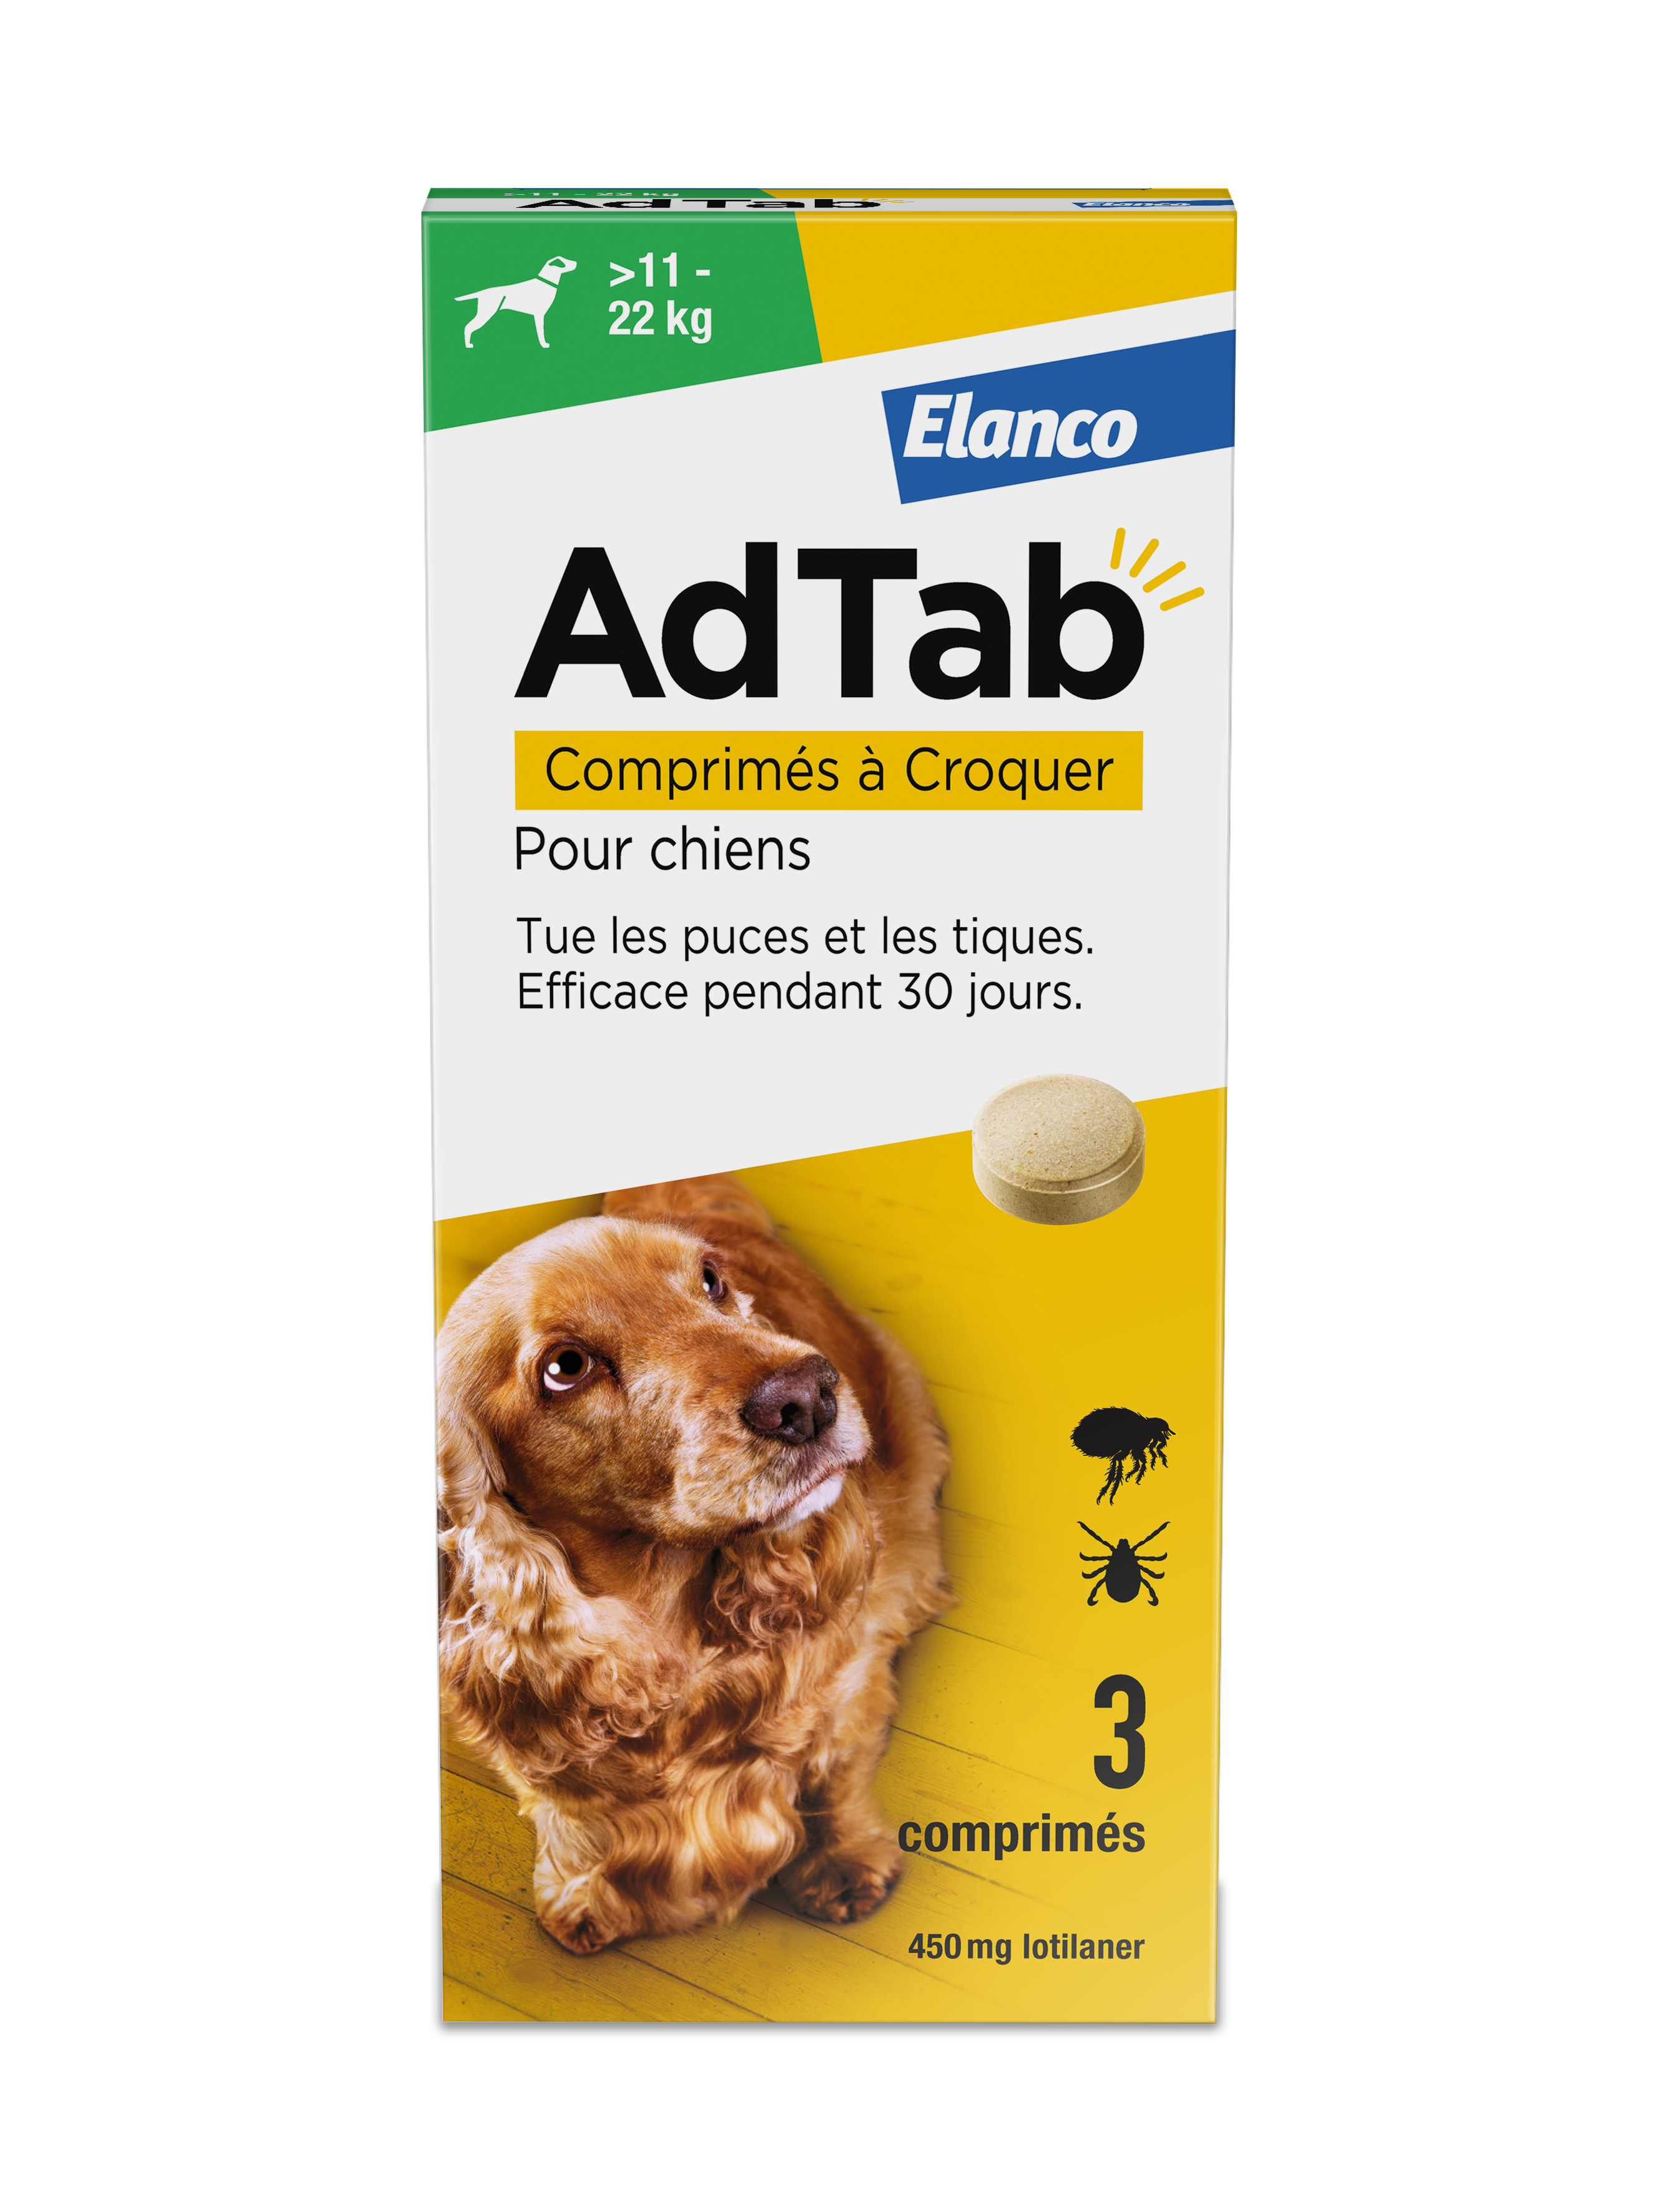 AdTab Elanco pour chien  Comprimé Anti puce et tique sans ordonnance